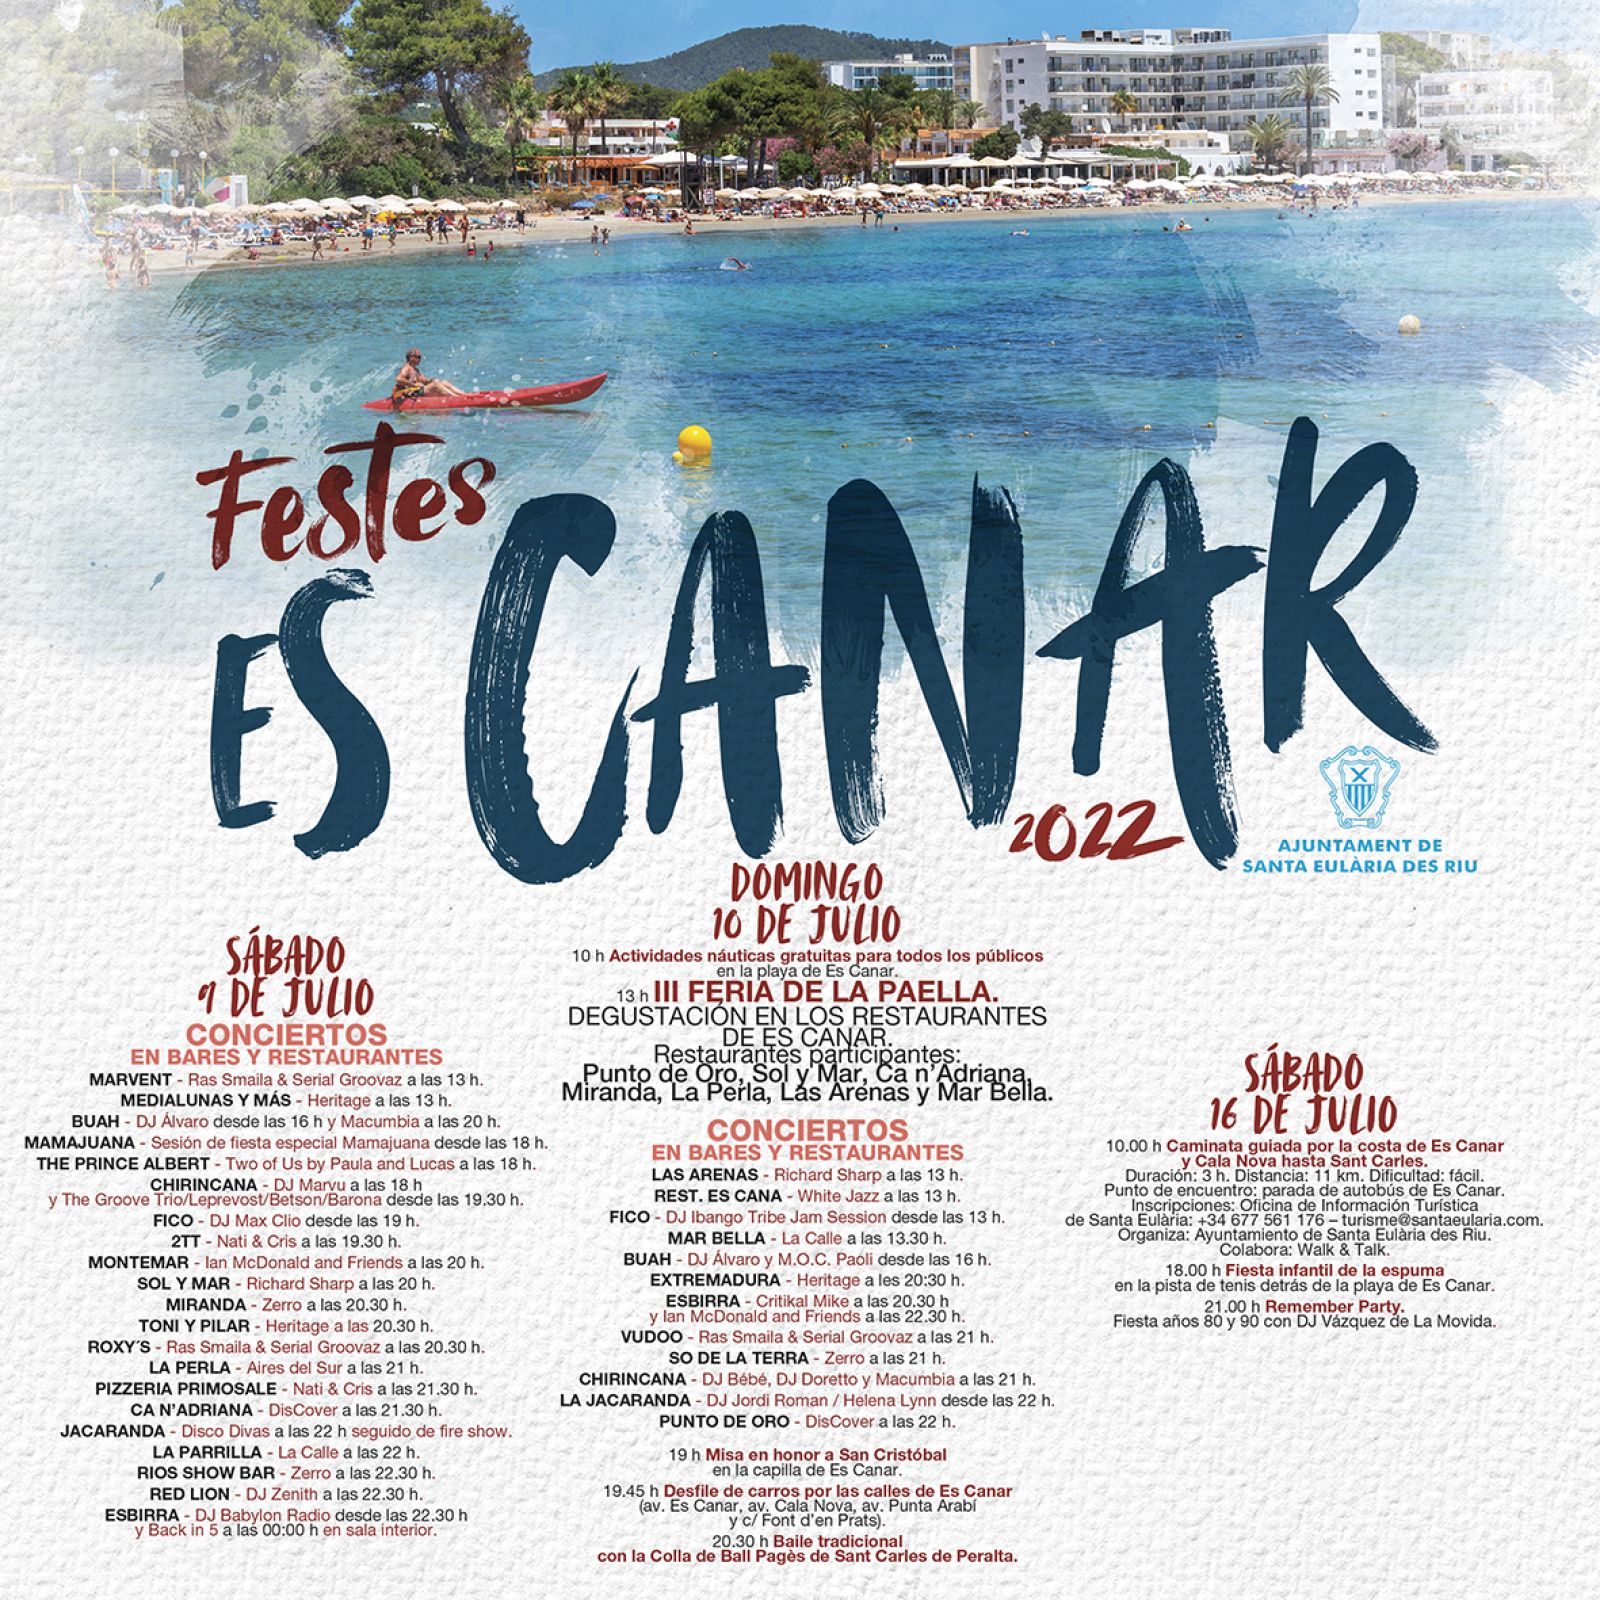 Las fiestas de es Canar llegan para celebrar San Cristóbal con mejores actuaciones y la tercera Feria Mundial de la Paella